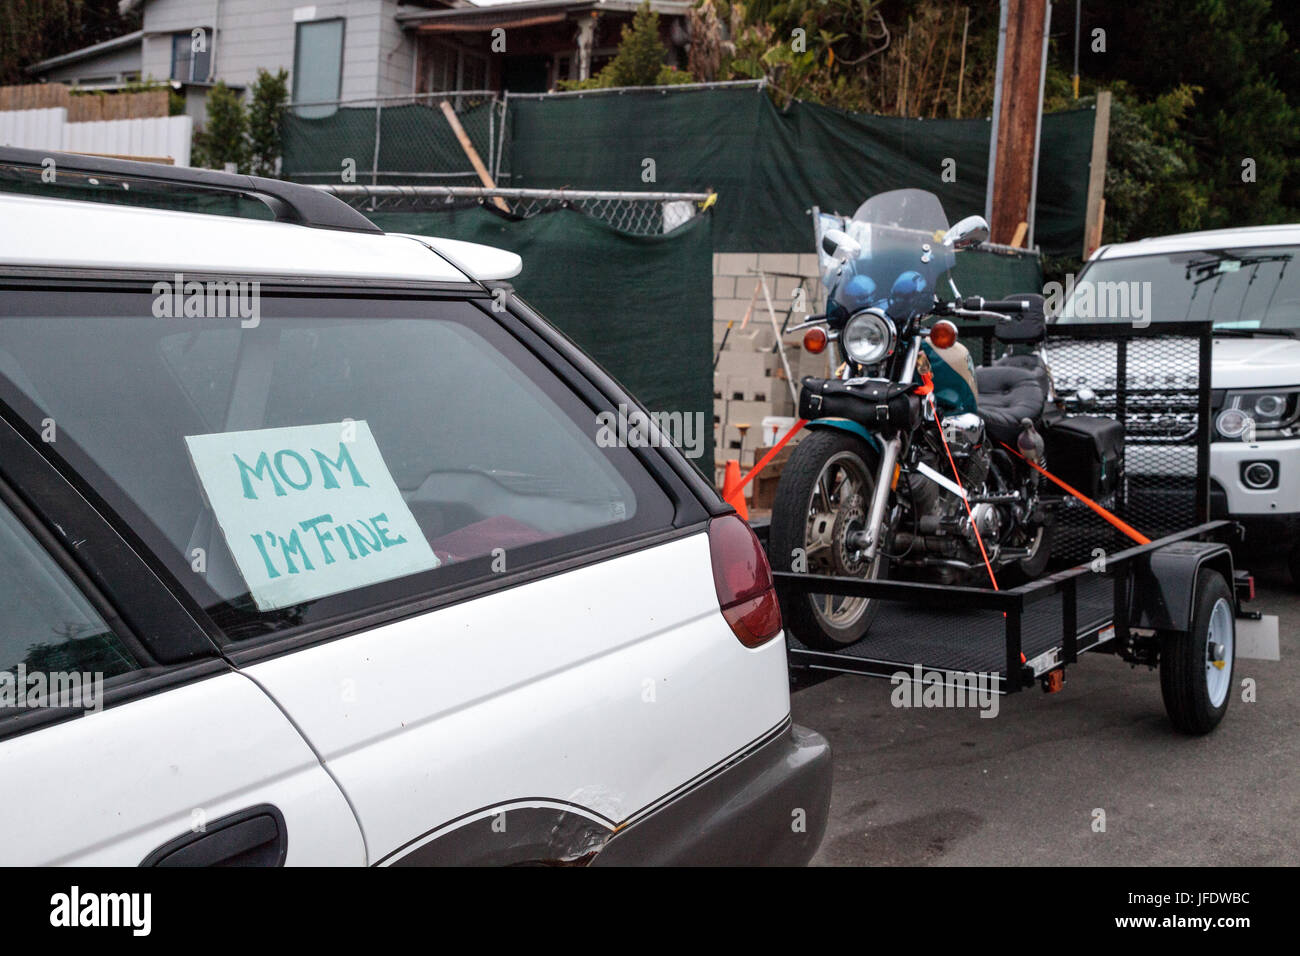 Laguna Beach, CA, USA - 30 juin 2017 : Moto Harley-Davidson 1100 tiré derrière dans une remorque d'une voiture avec un panneau qui dit maman je vais bien. Editori Banque D'Images